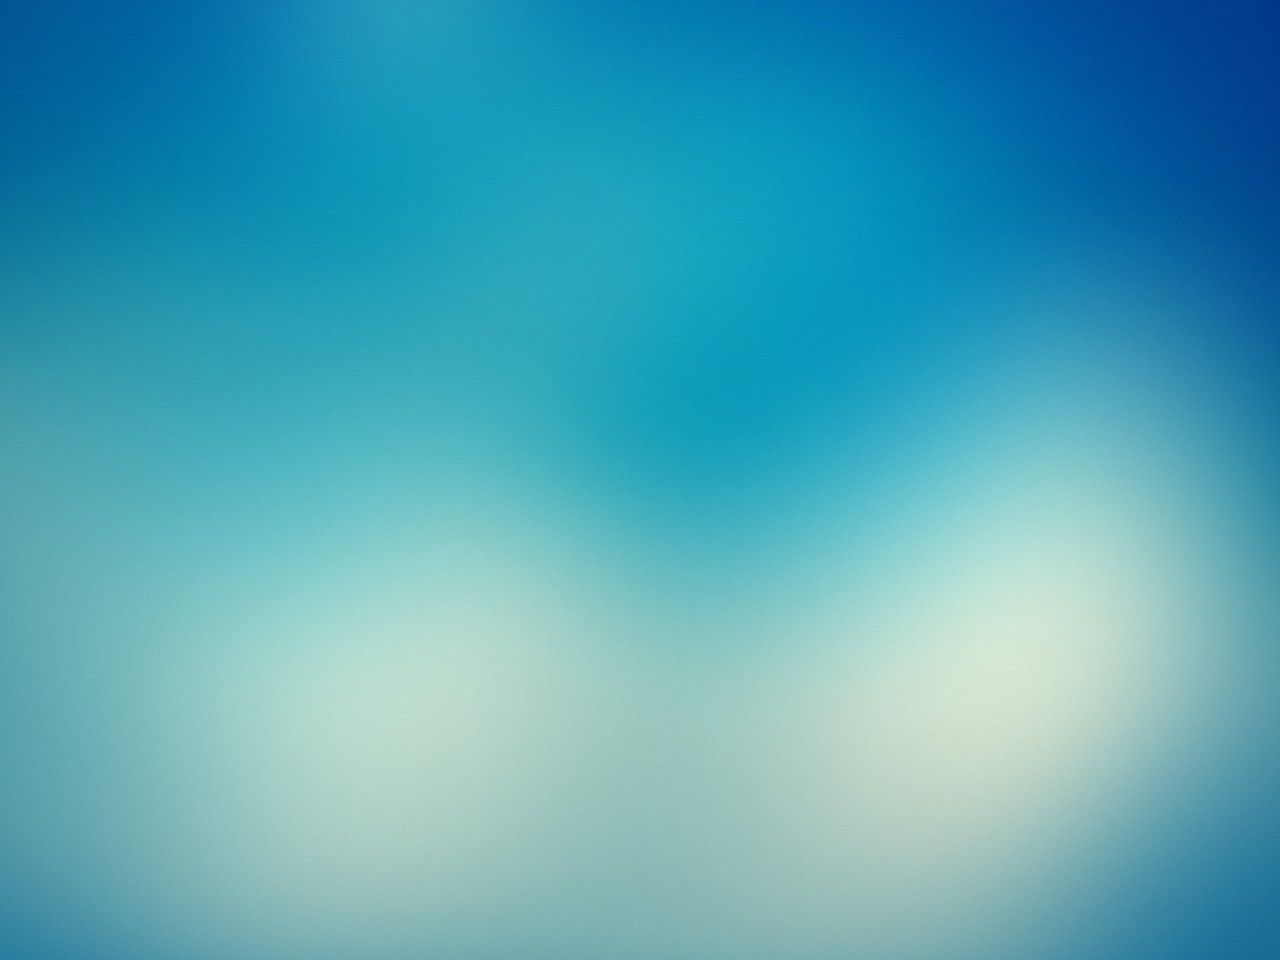 Windows 8 Misty wallpaper - HD Backgrounds